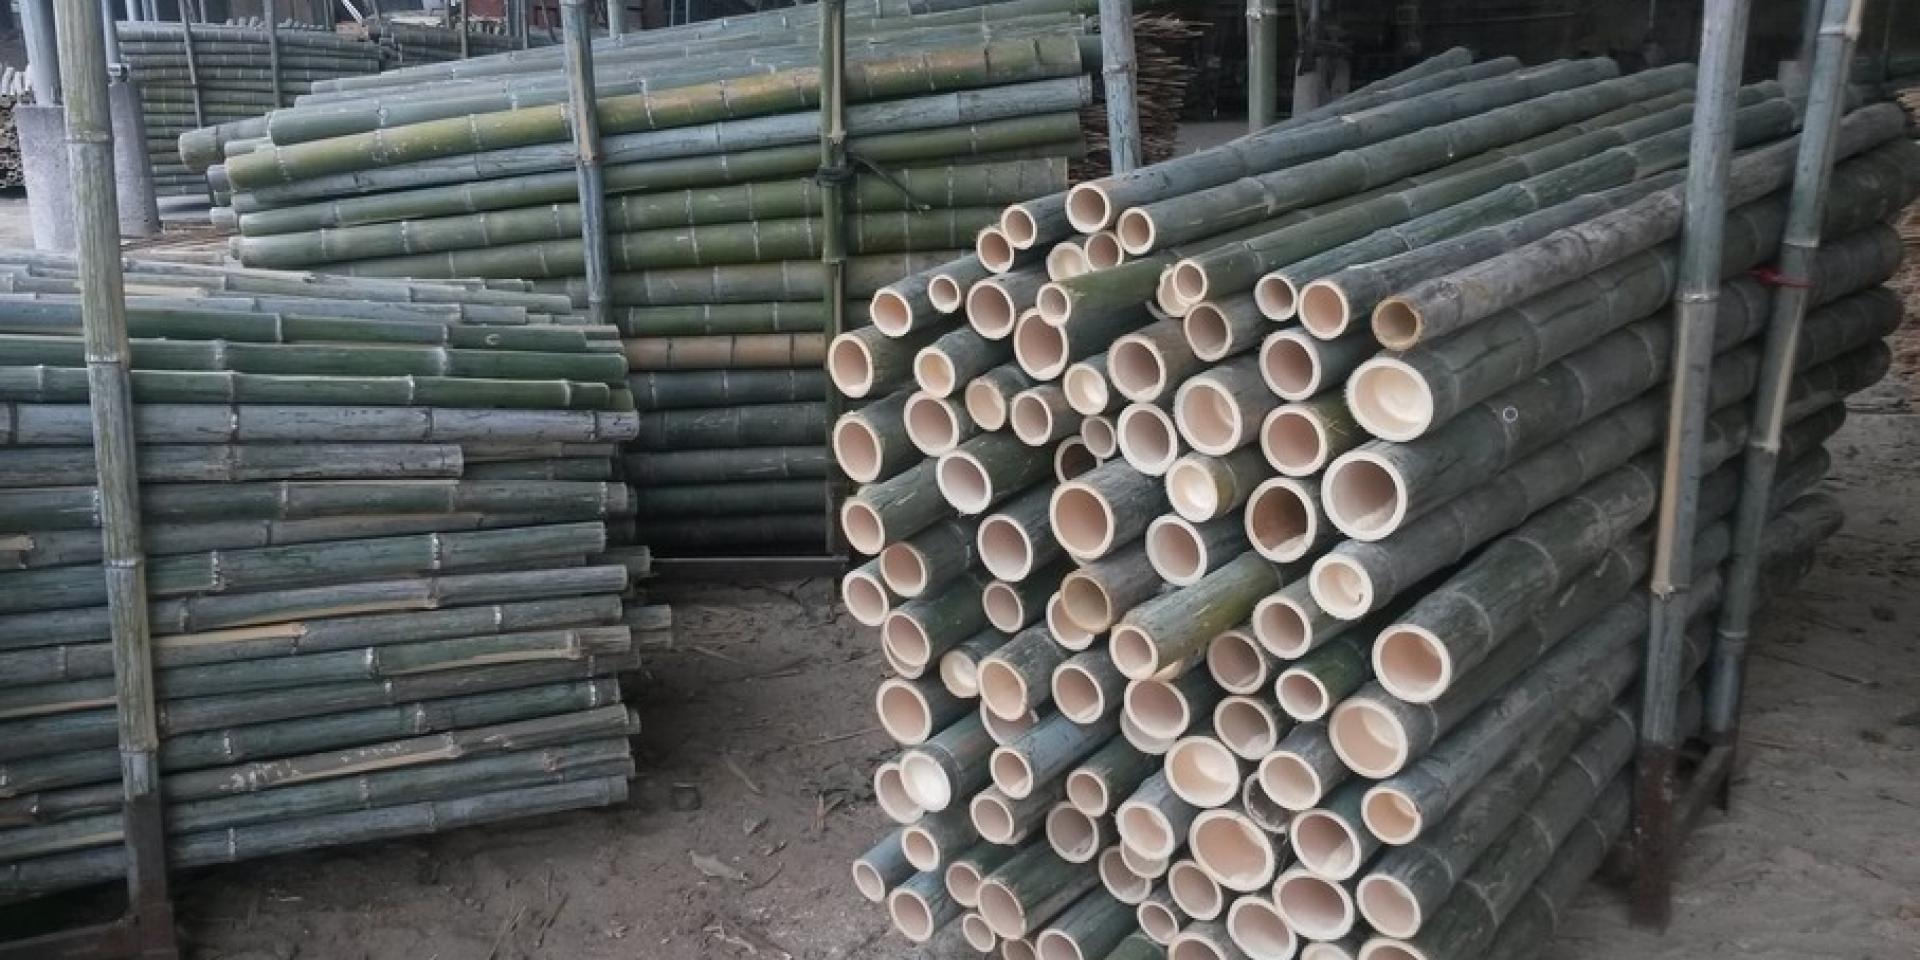 Chaumes de bambou